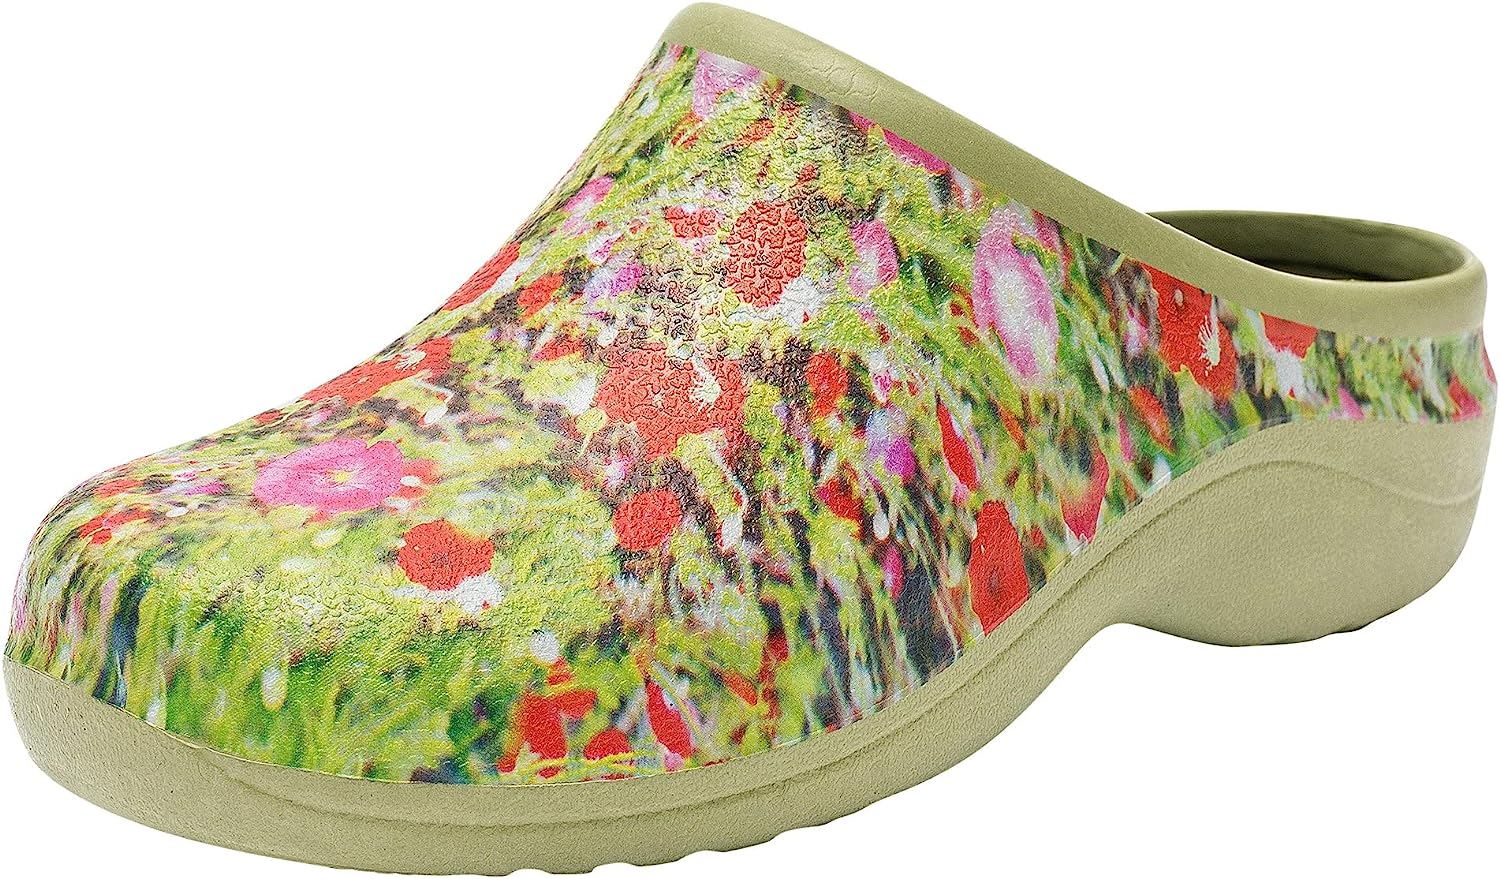 Backdoorshoes Waterproof Premium Garden Clog Shoes for [...]